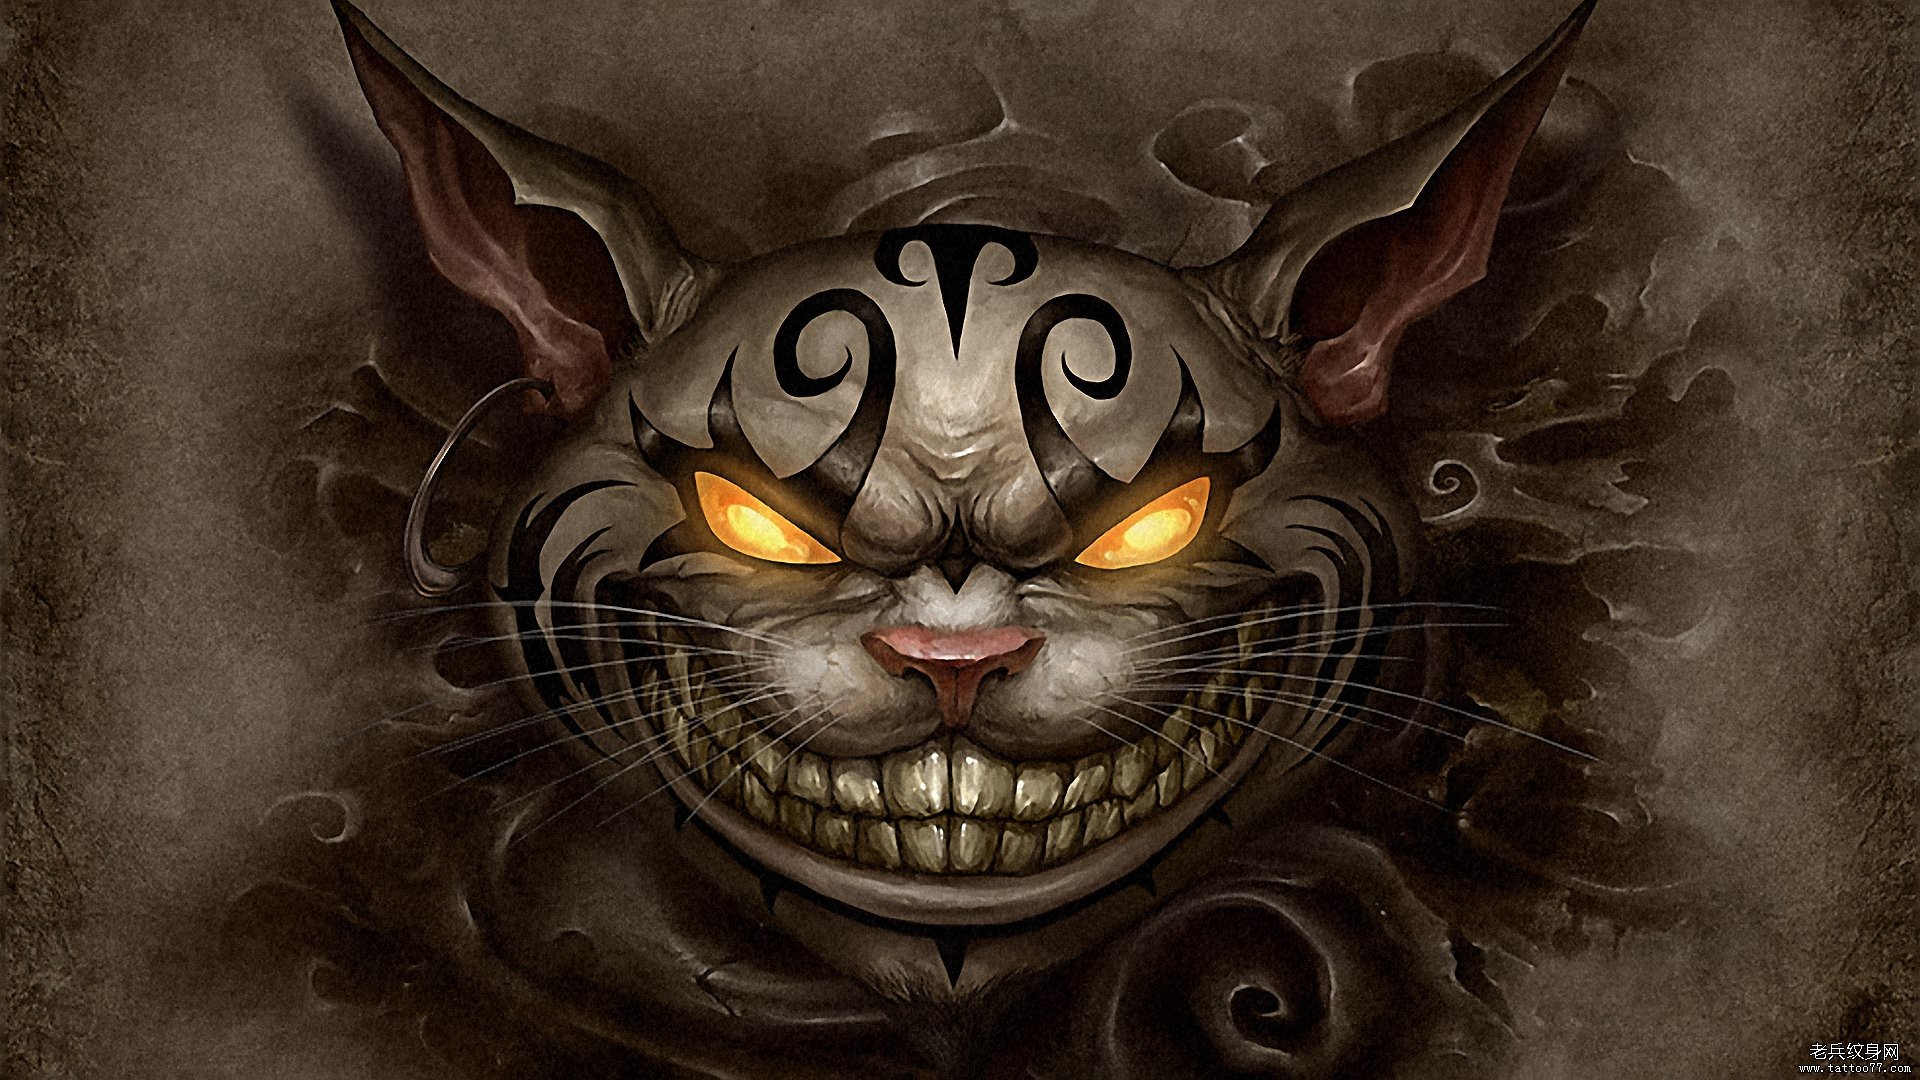 2014年龙猫战士高清纹身壁纸桌面图片下载